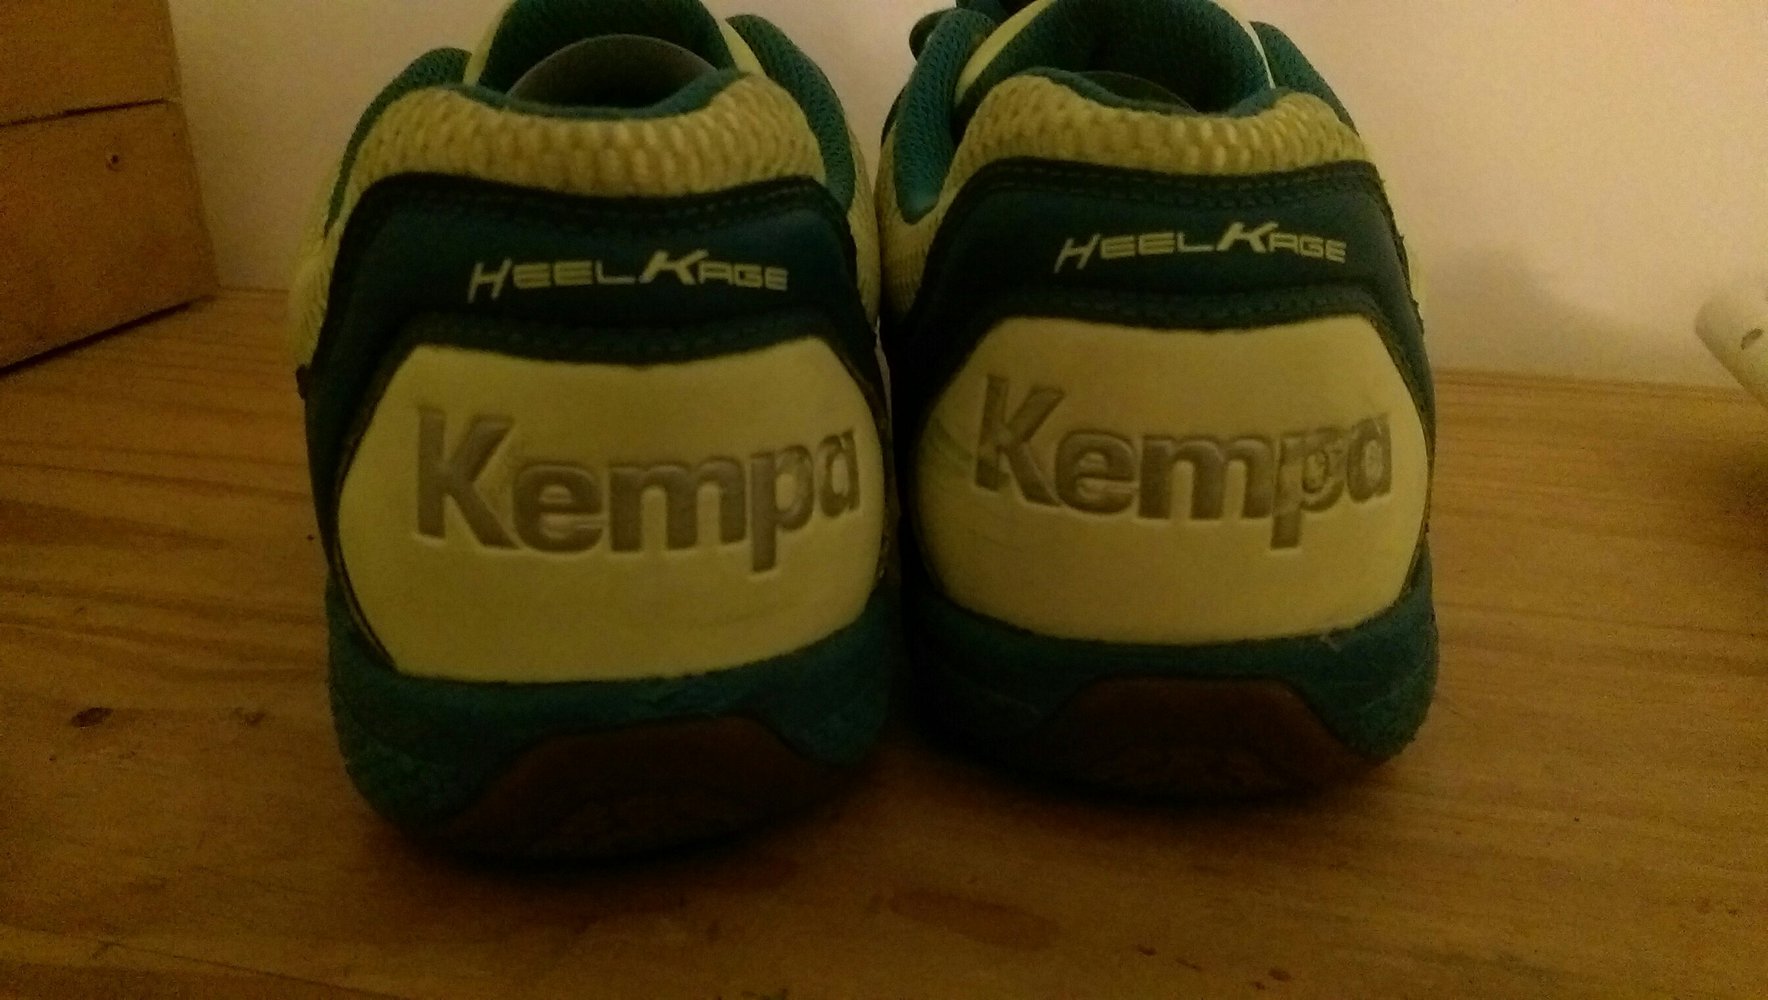 Handball/Hallenturnschuhe von der Marke Kempa